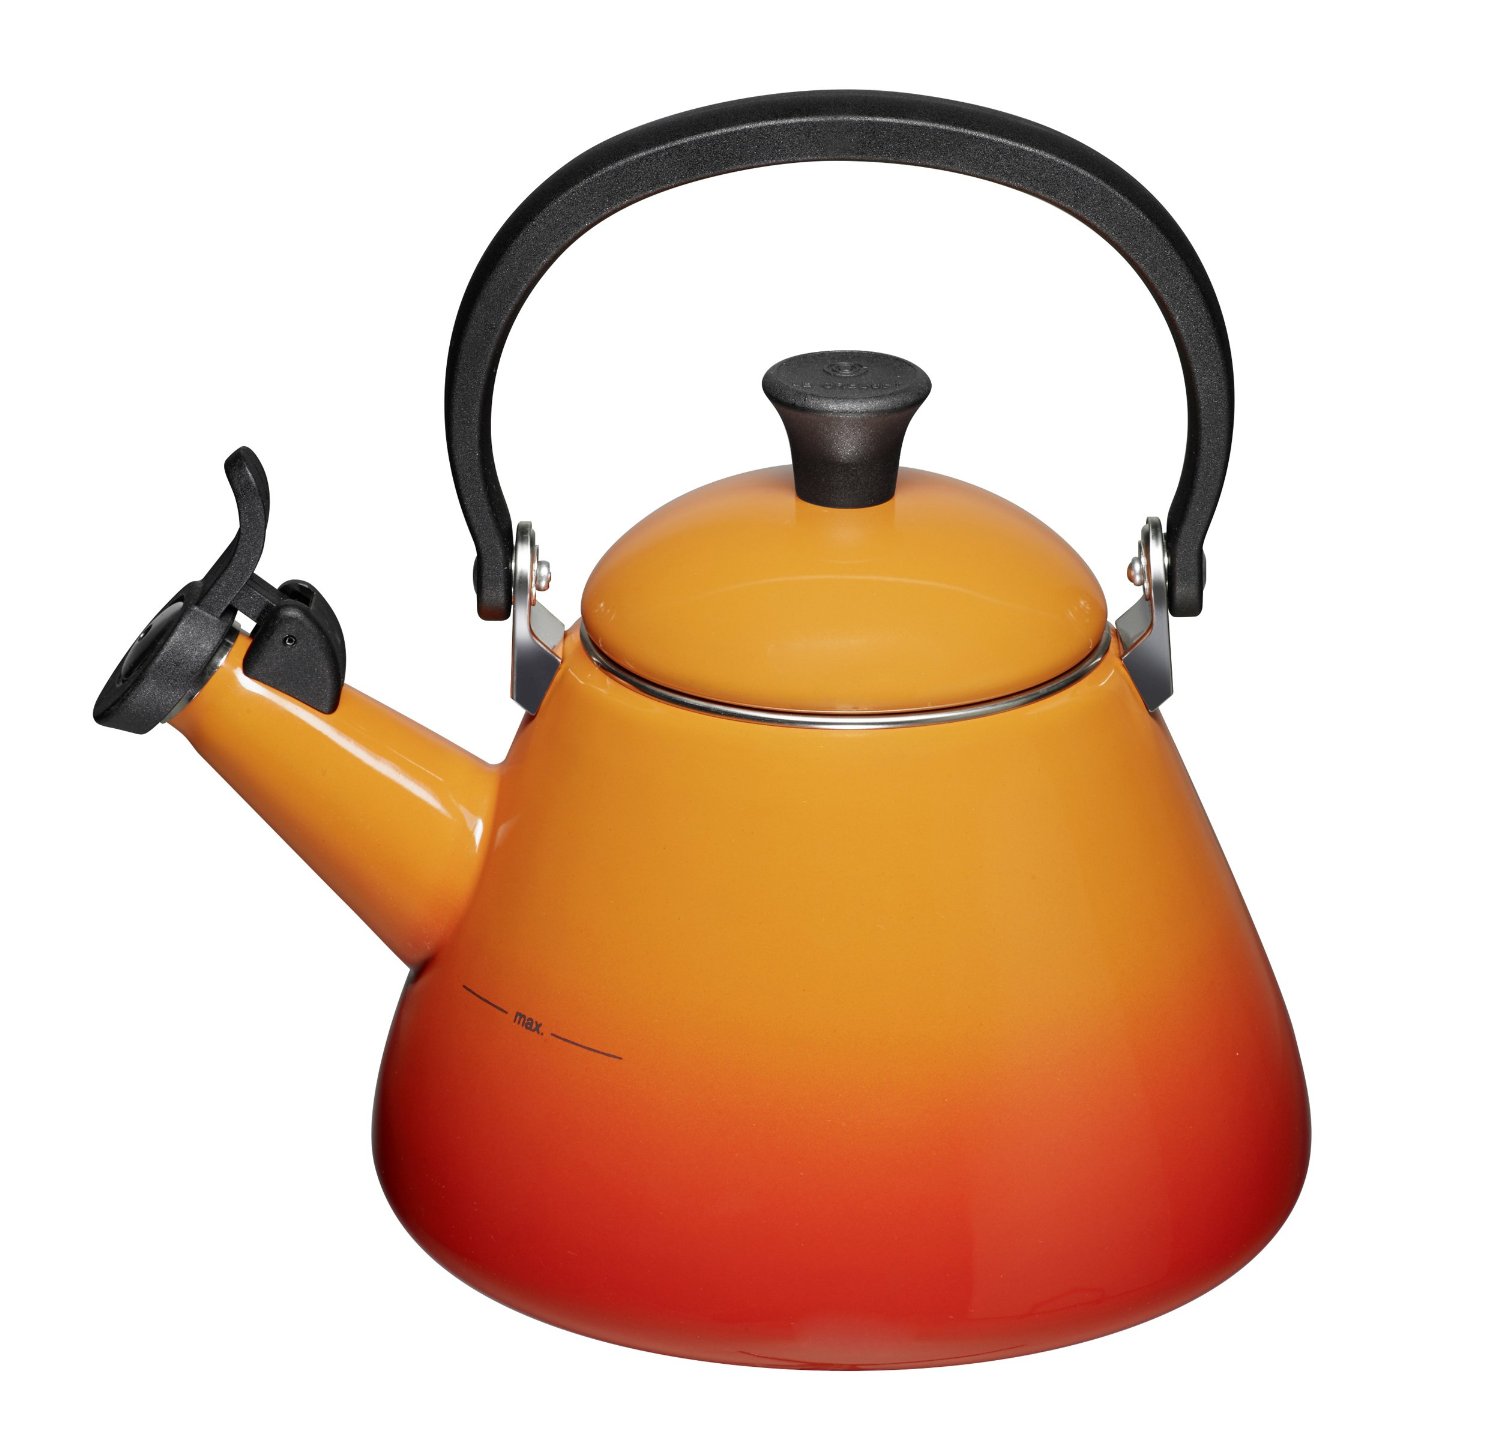 Le Creuset Конический чайник 1,6 л, оранжевый | https://grandposuda.com.ua